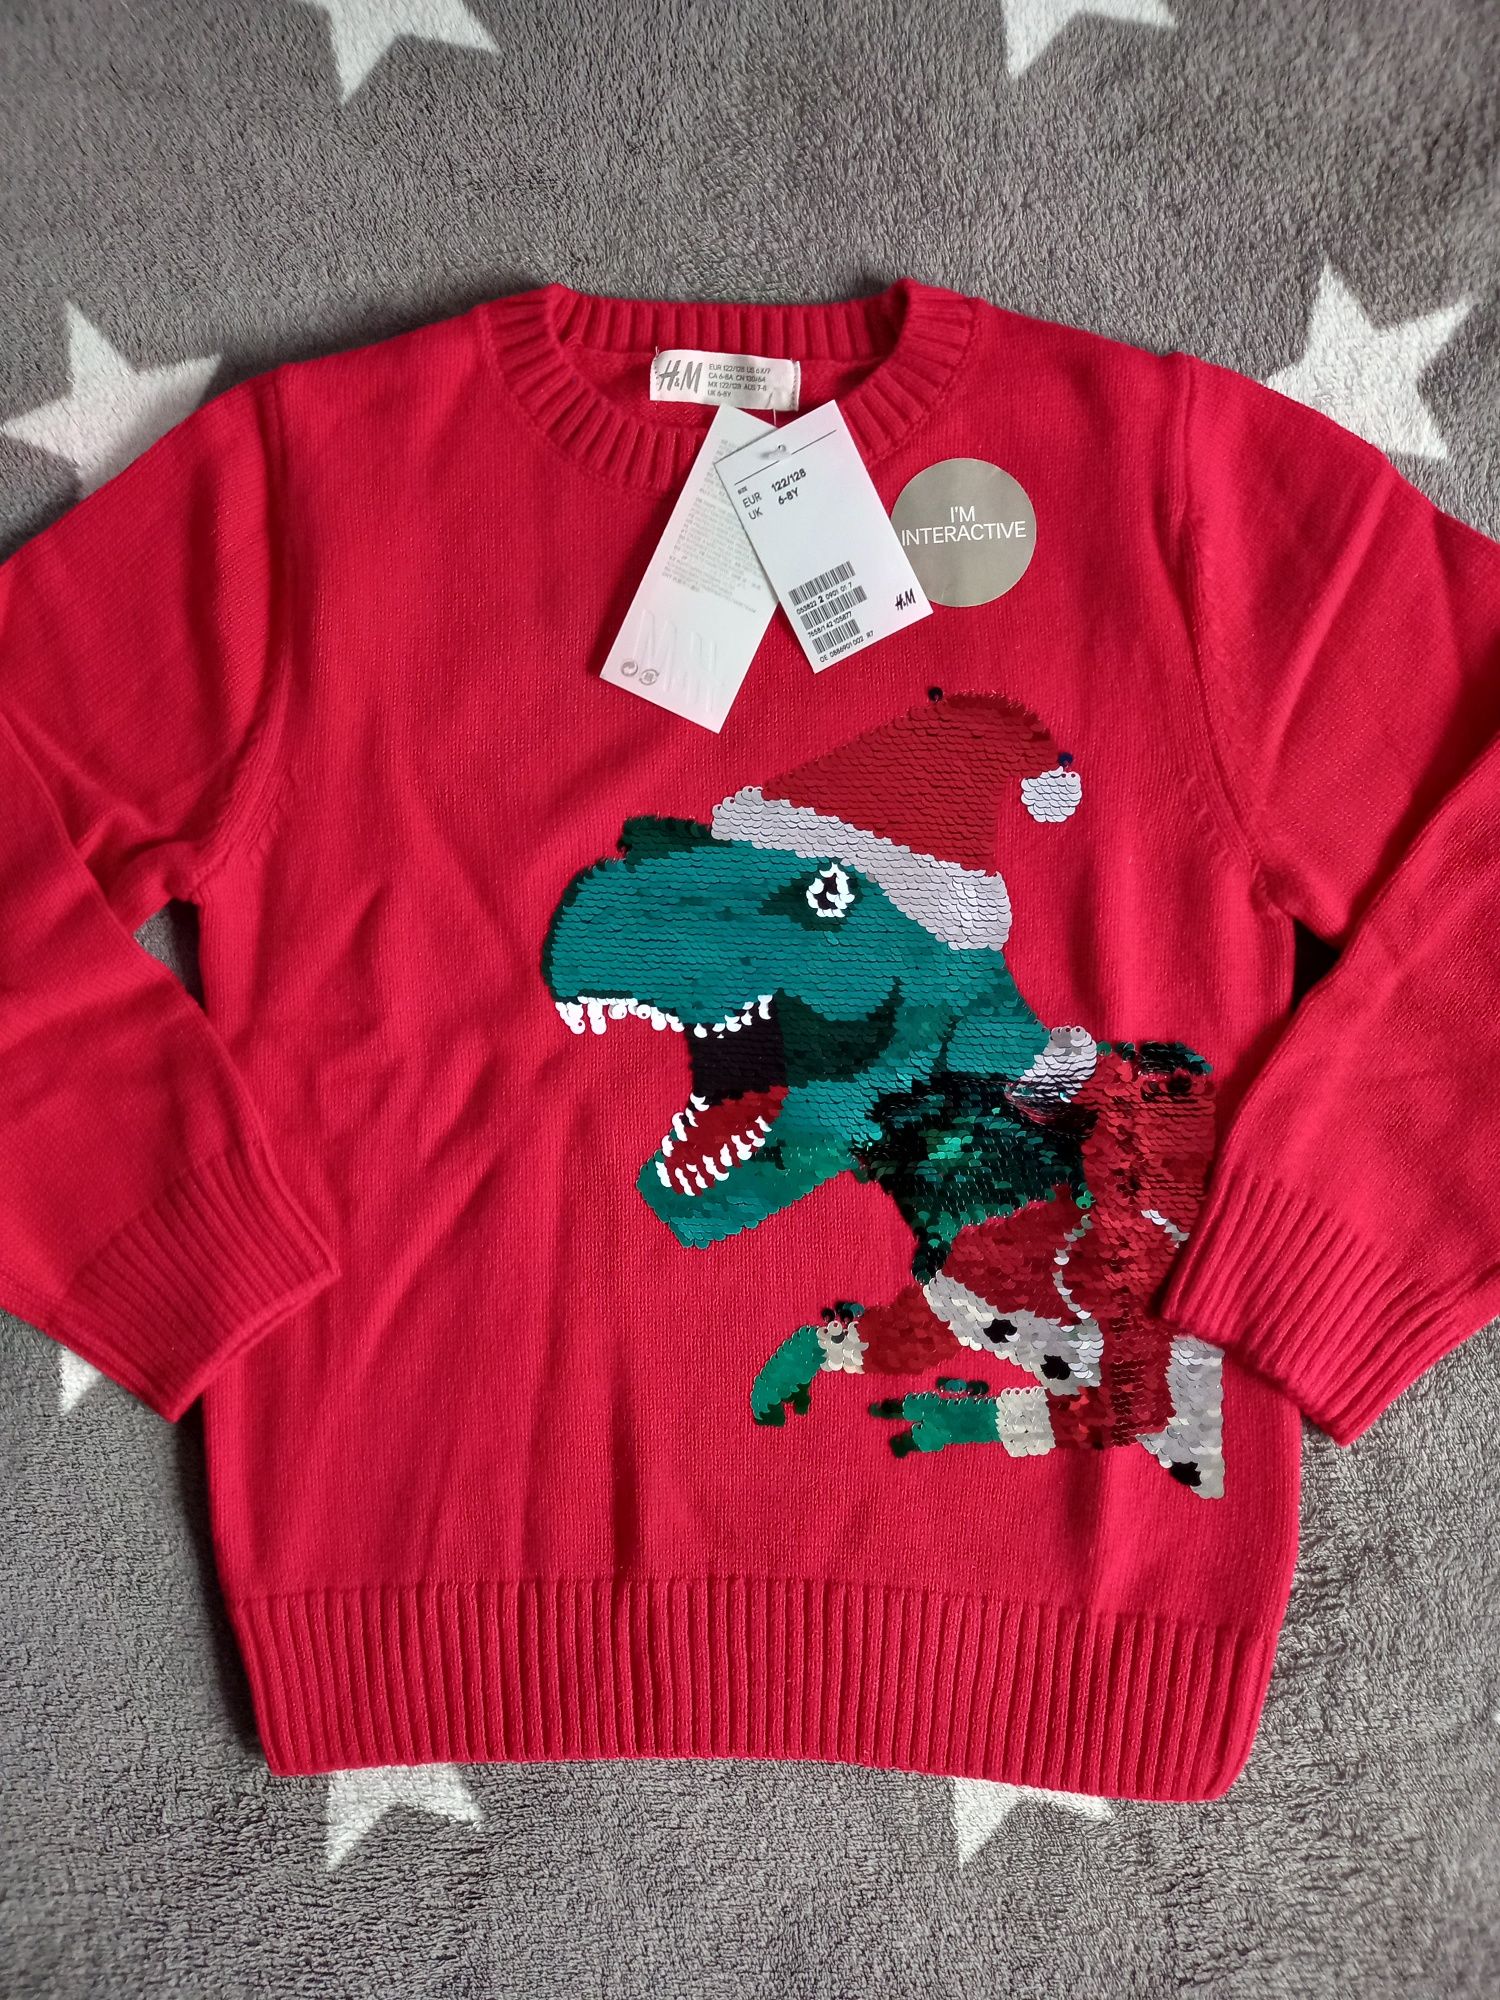 NOWY sweter bluza h&m hm 122 128 dinozaur dinozaury mikołaj święta